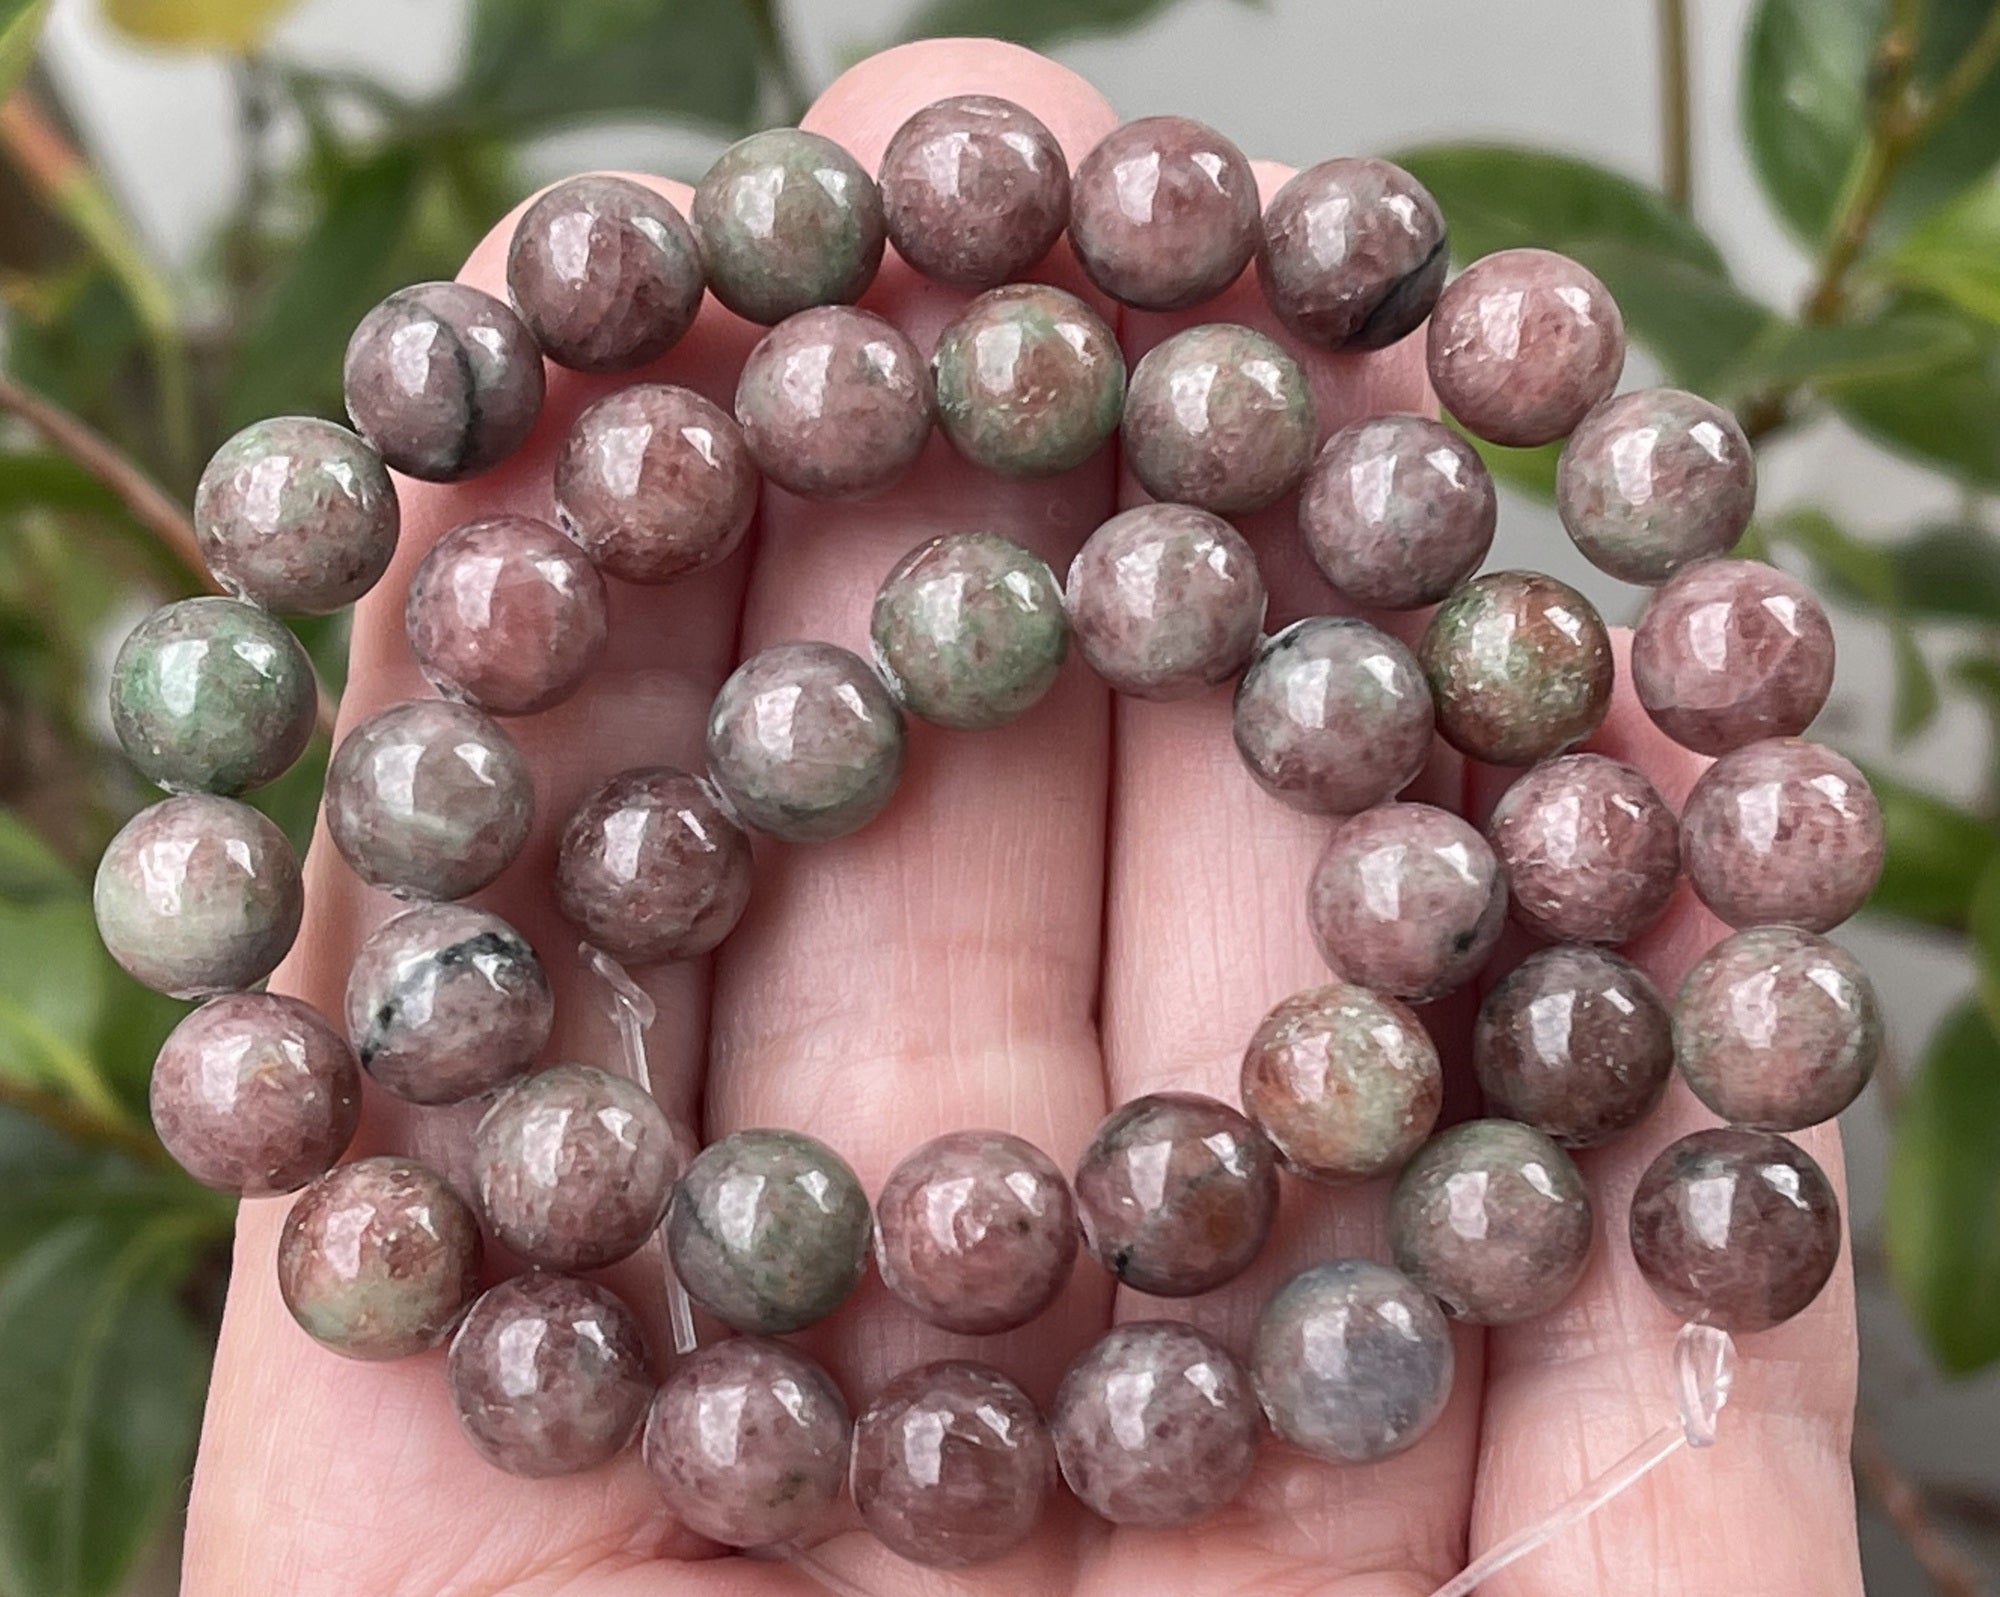 Red Green Kashgar Garnet 8mm round natural gemstone beads 15" strand